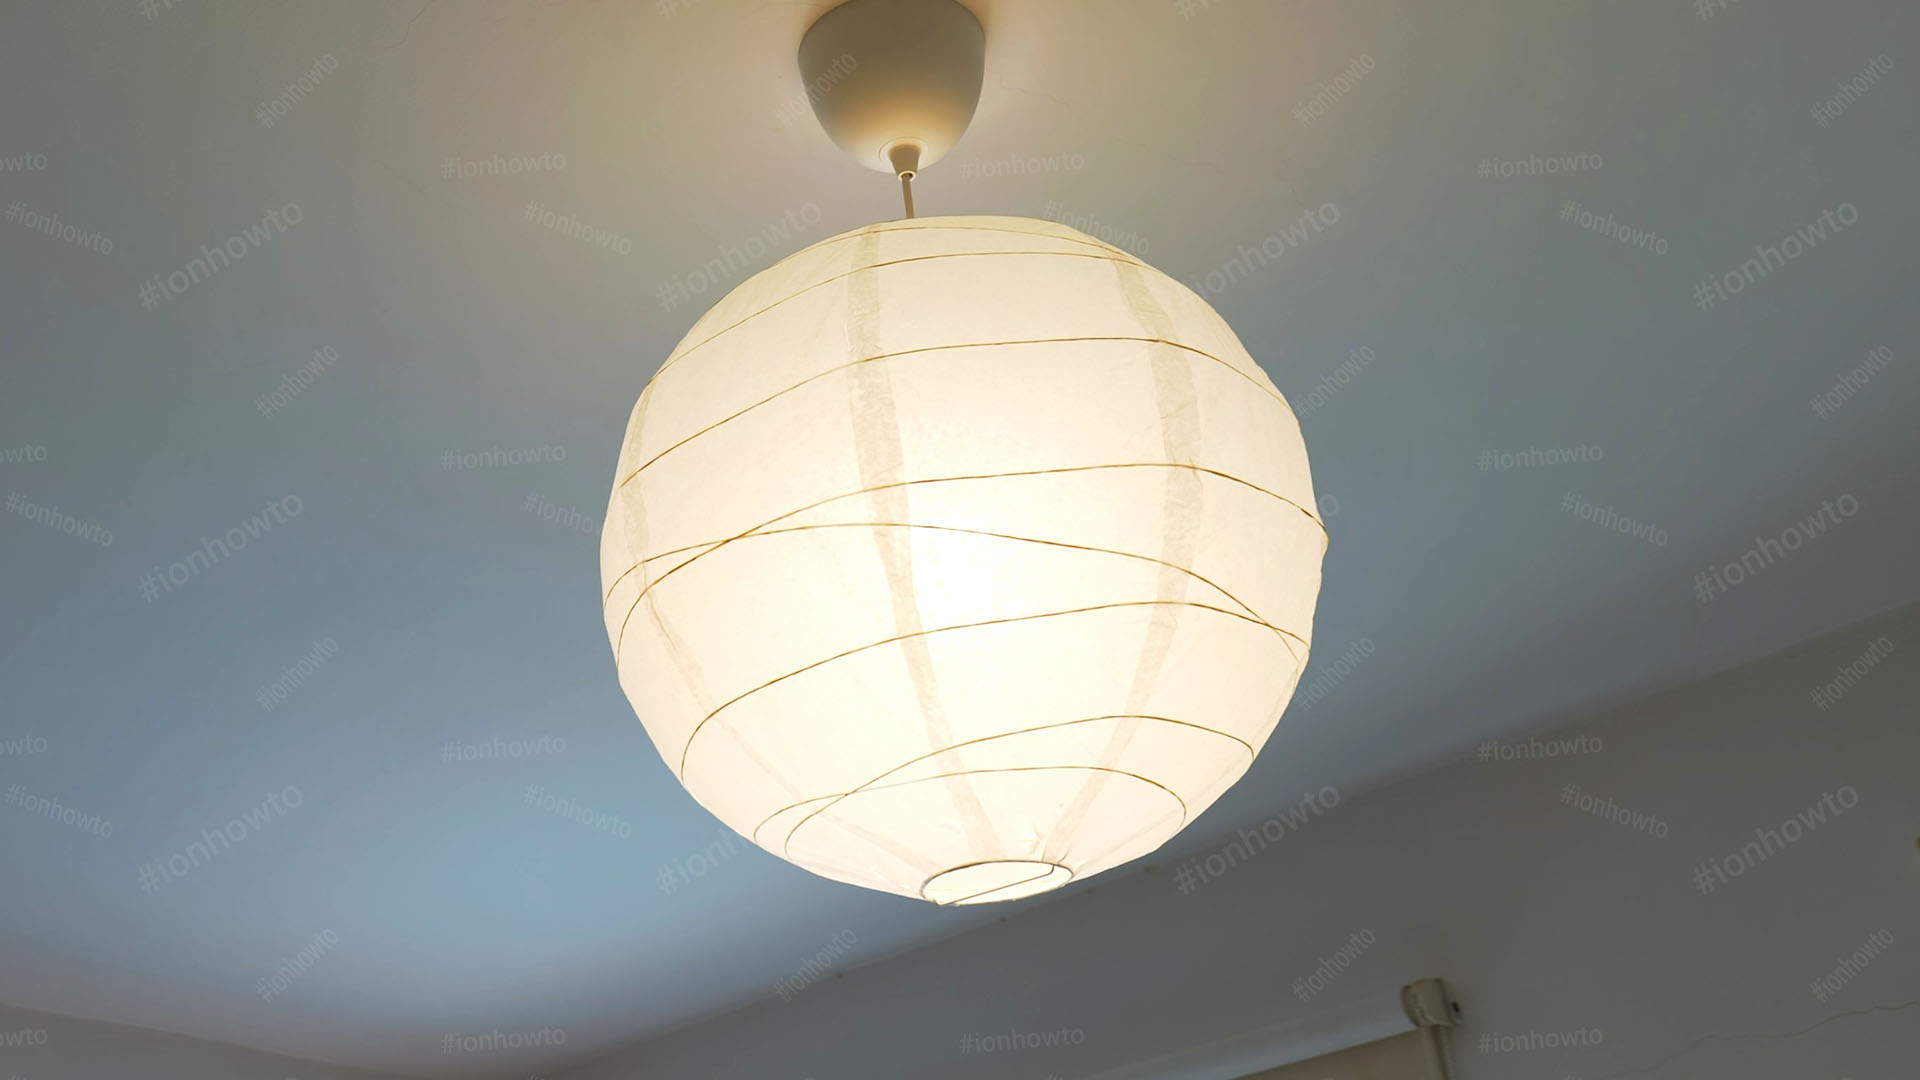 Use energy efficient LED light bulbs